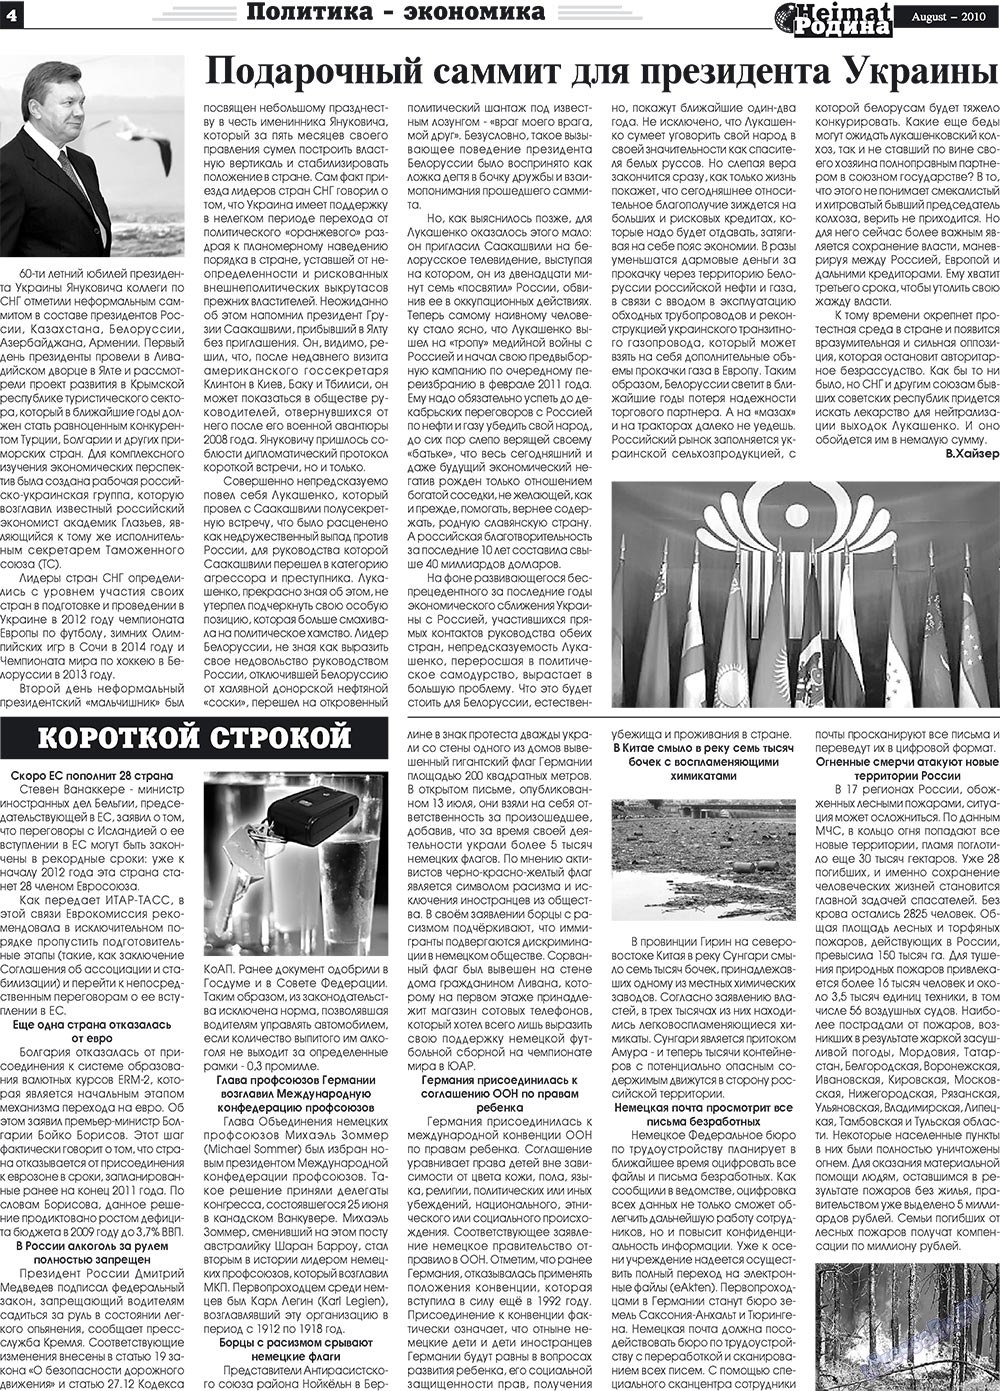 Heimat-Родина (газета). 2010 год, номер 8, стр. 4